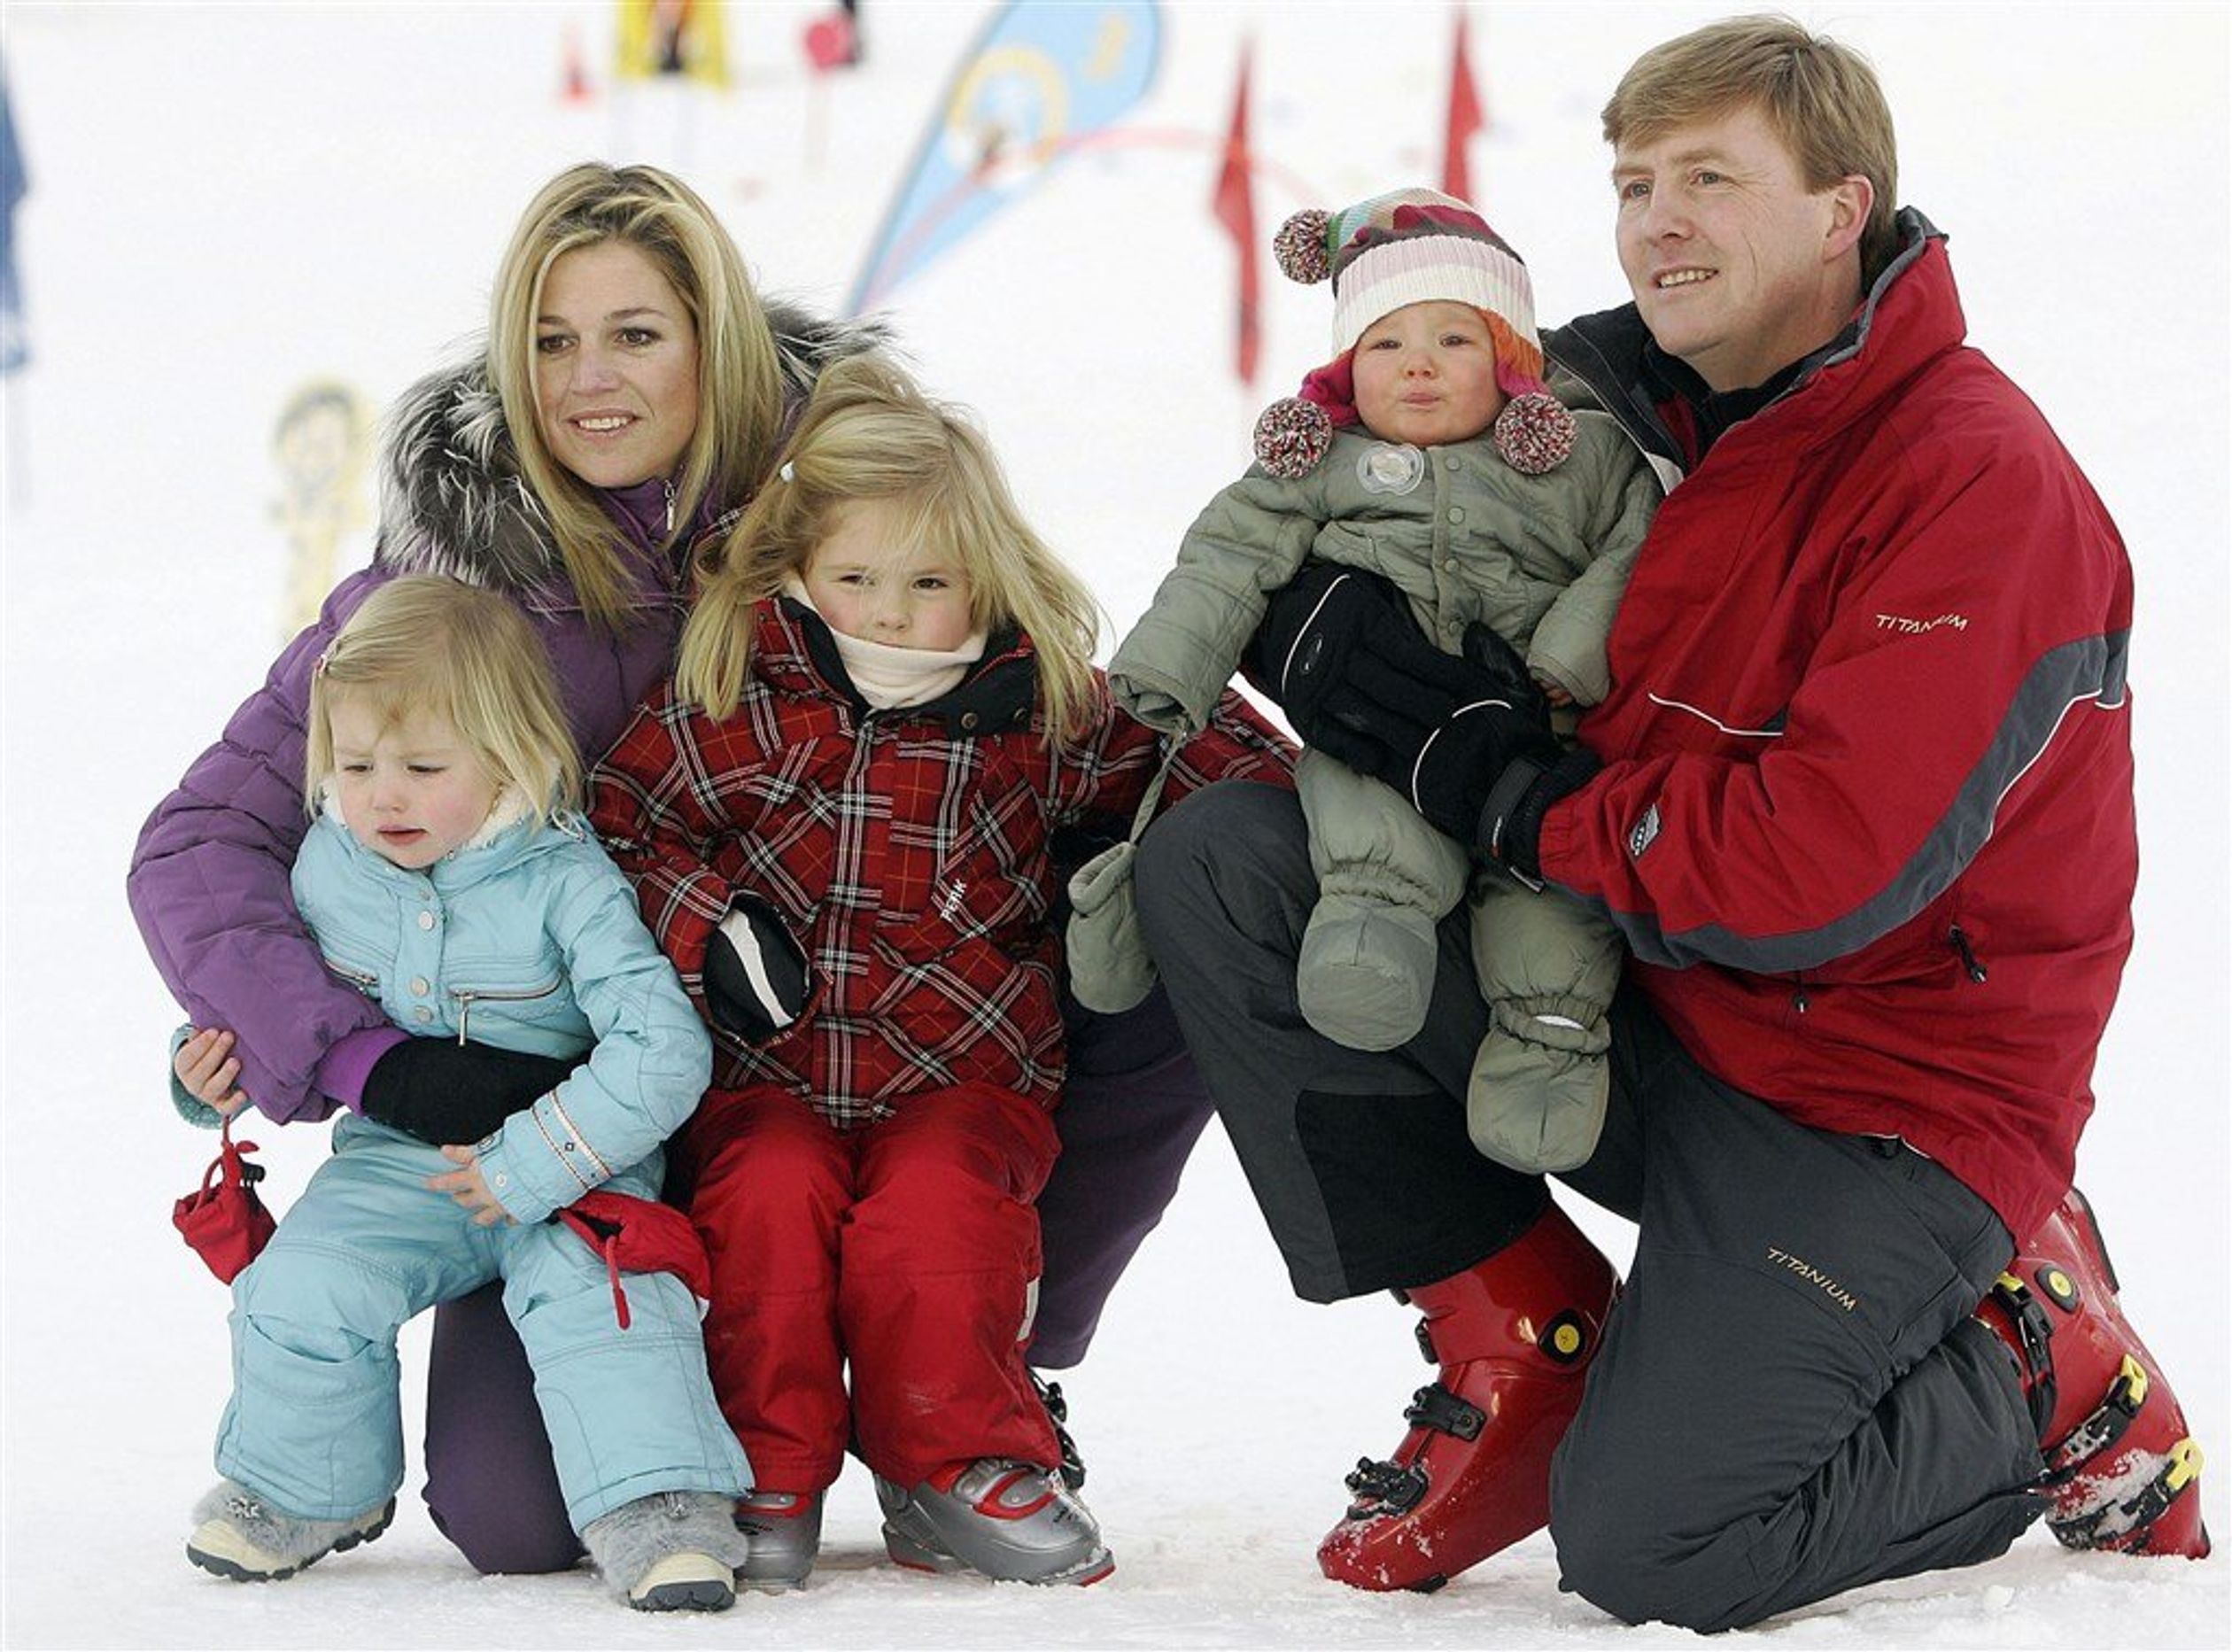 De koninklijke familie poseert in de sneeuw tijdens de jaarlijkse fotosessie in Lech (10 februari